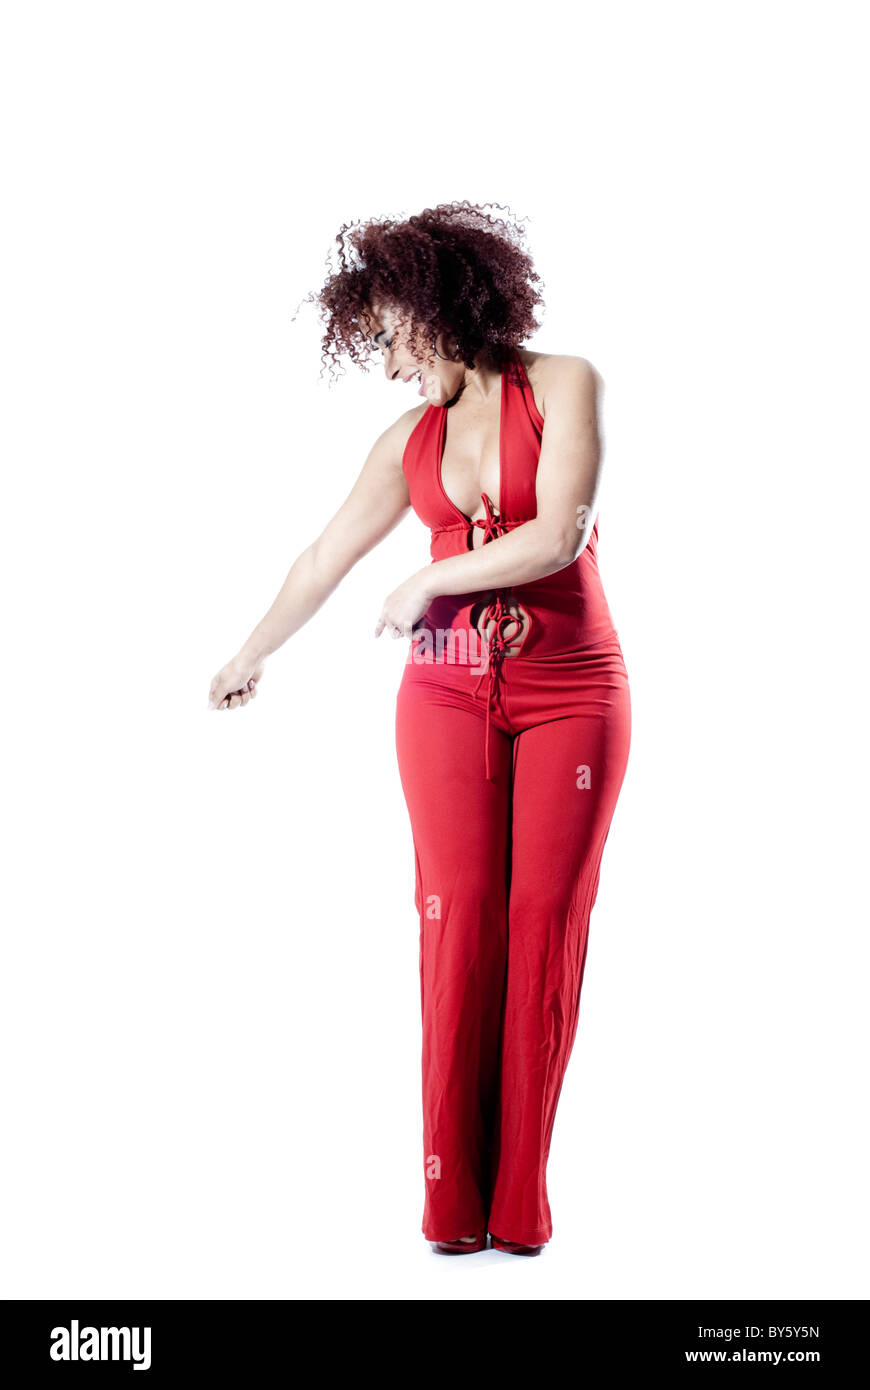 La donna brasiliana ballando e giocando in studio. La donna indossa un abito rosso e capelli ricci Foto Stock